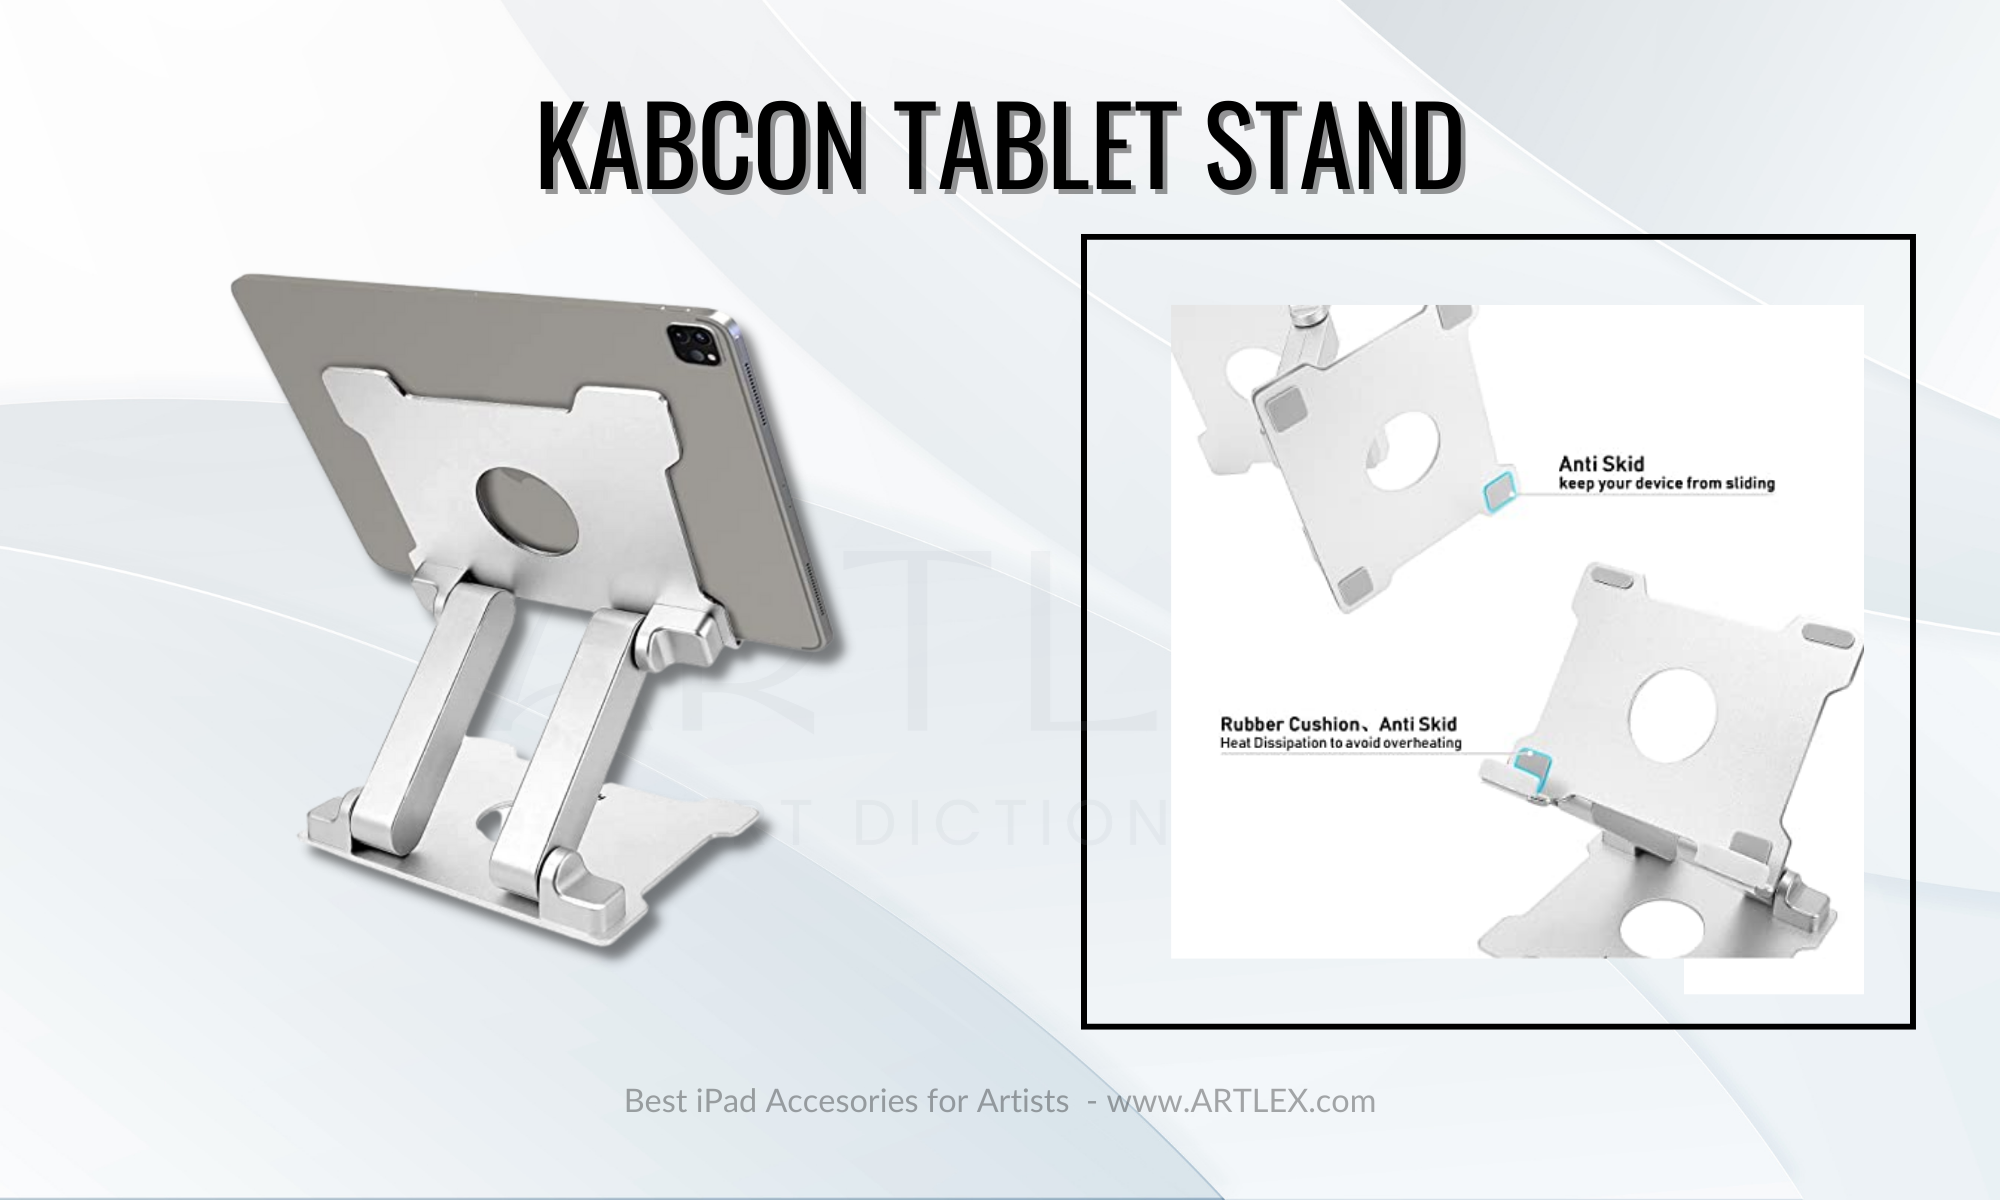 Meilleur support de tablette ergonomique - KABCON Tablet Stand